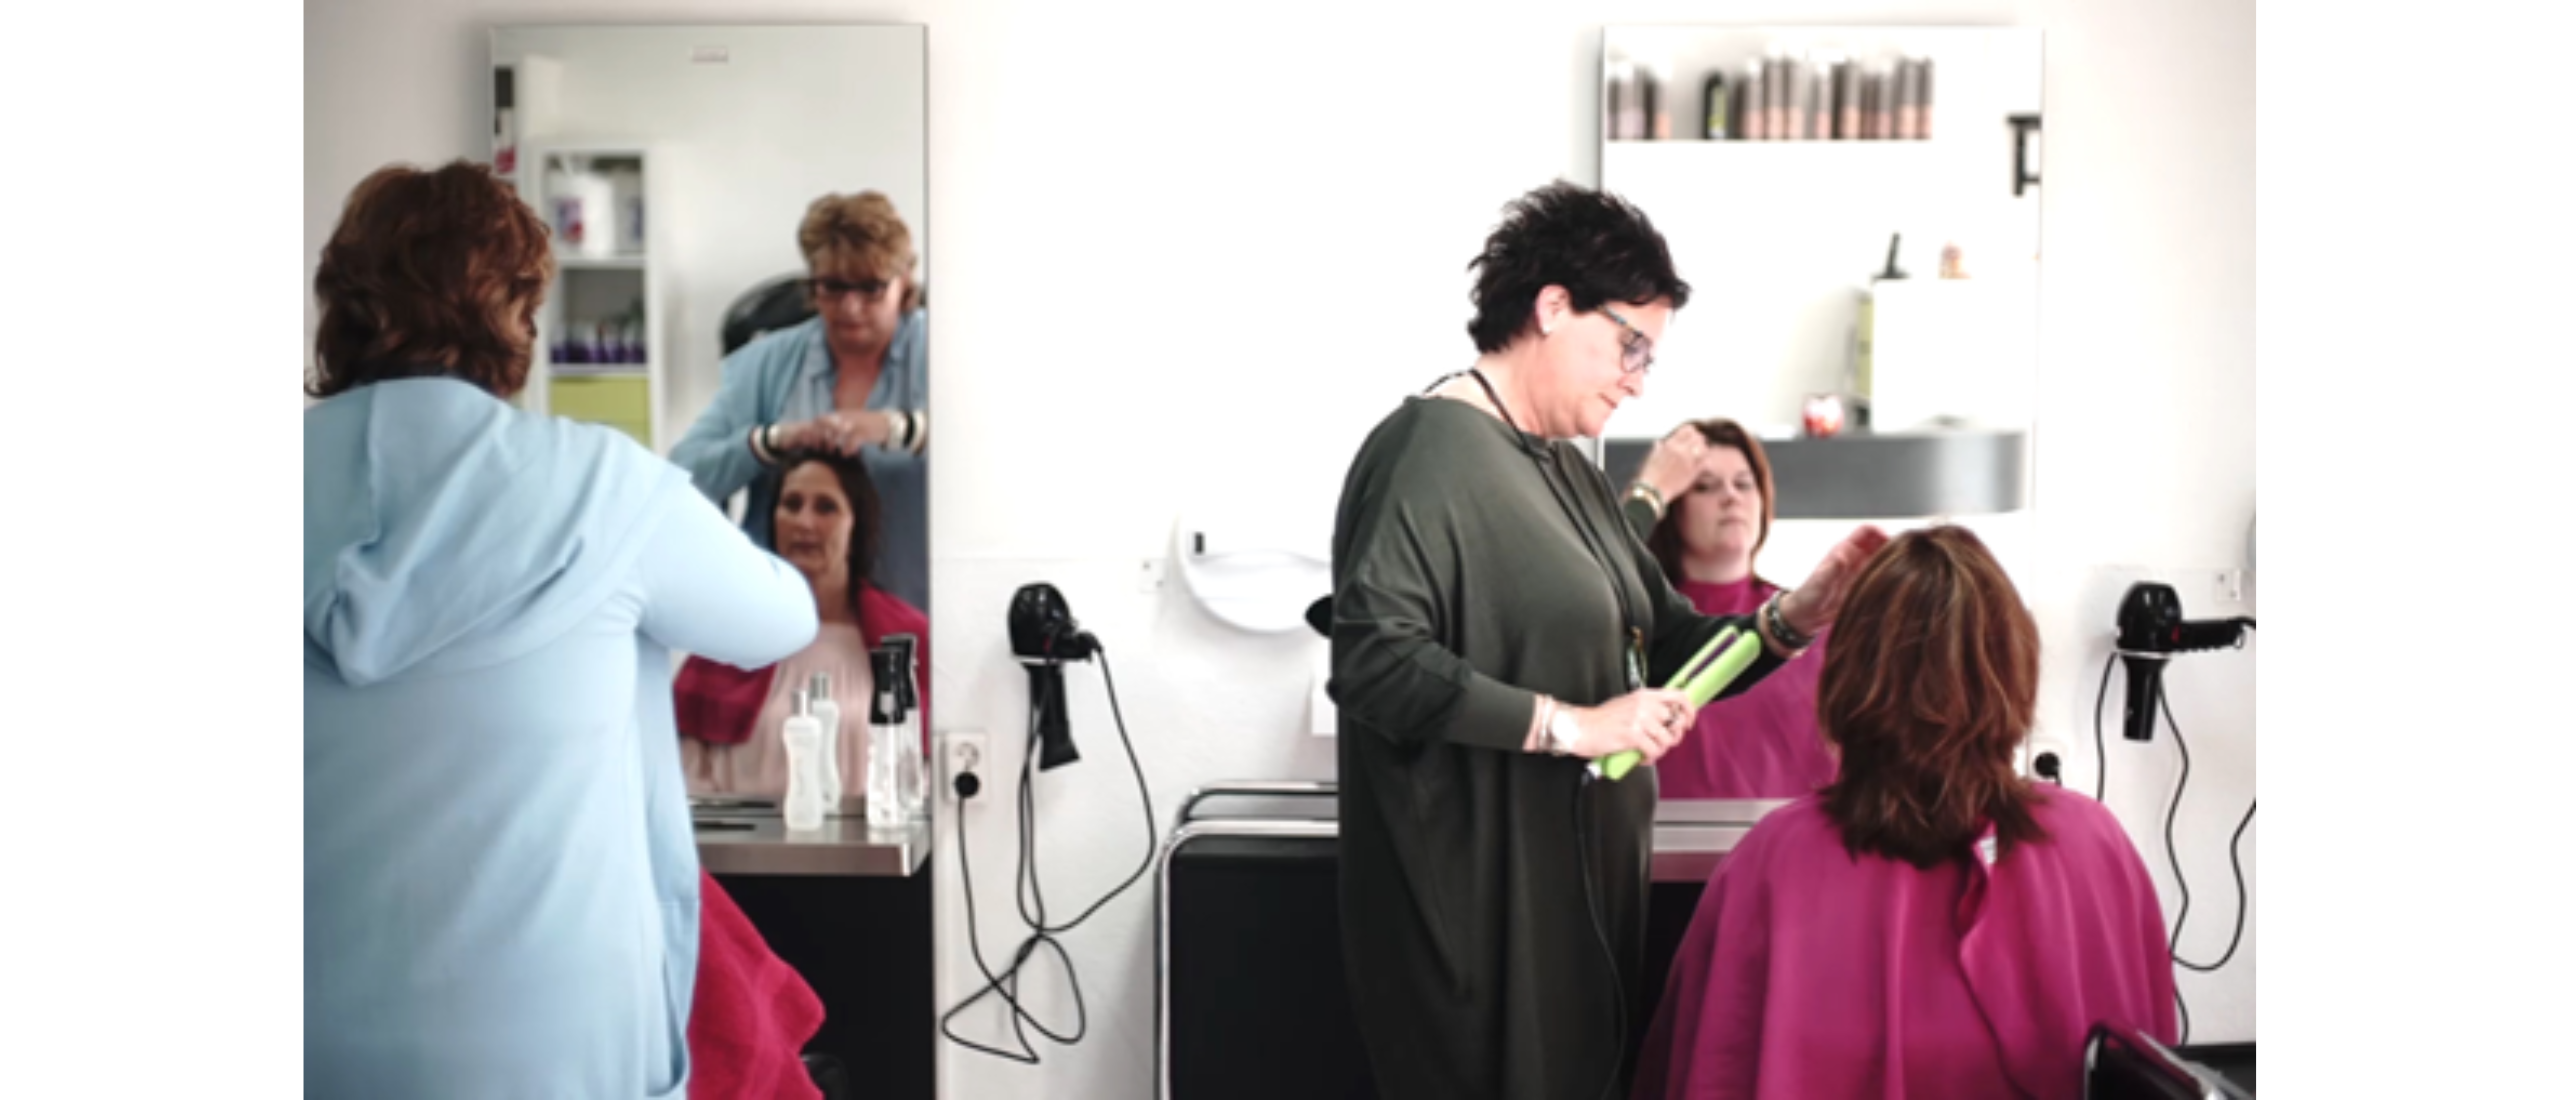 Professionele Hairstyling en Kappersservices bij Hairstudio Shine in Amstelveen en Aalsmeer